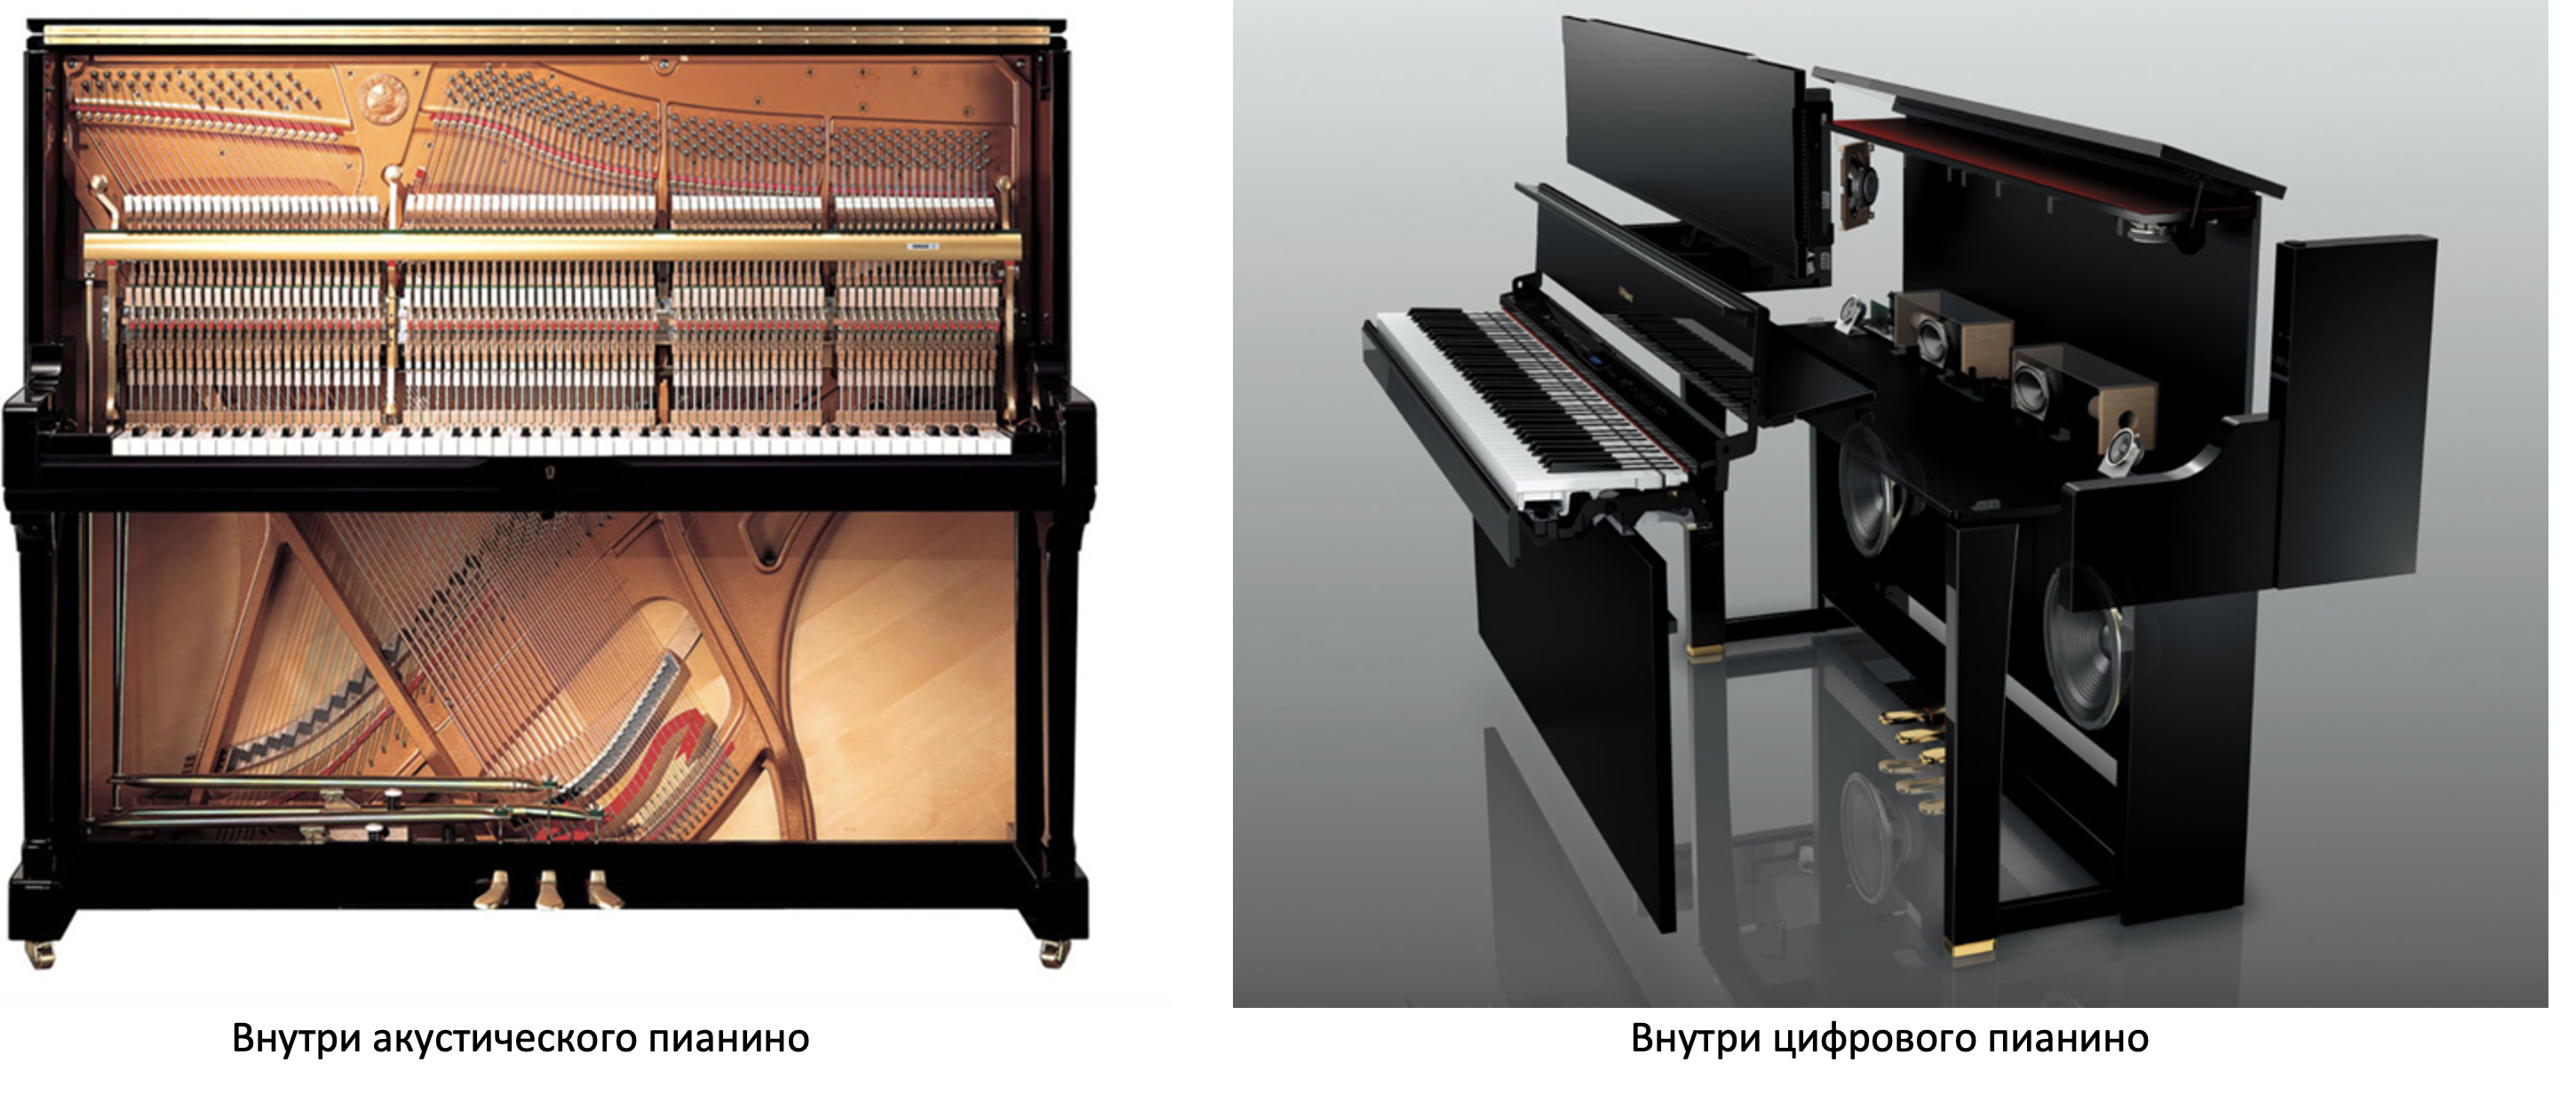 Как выглядит пианино внутри